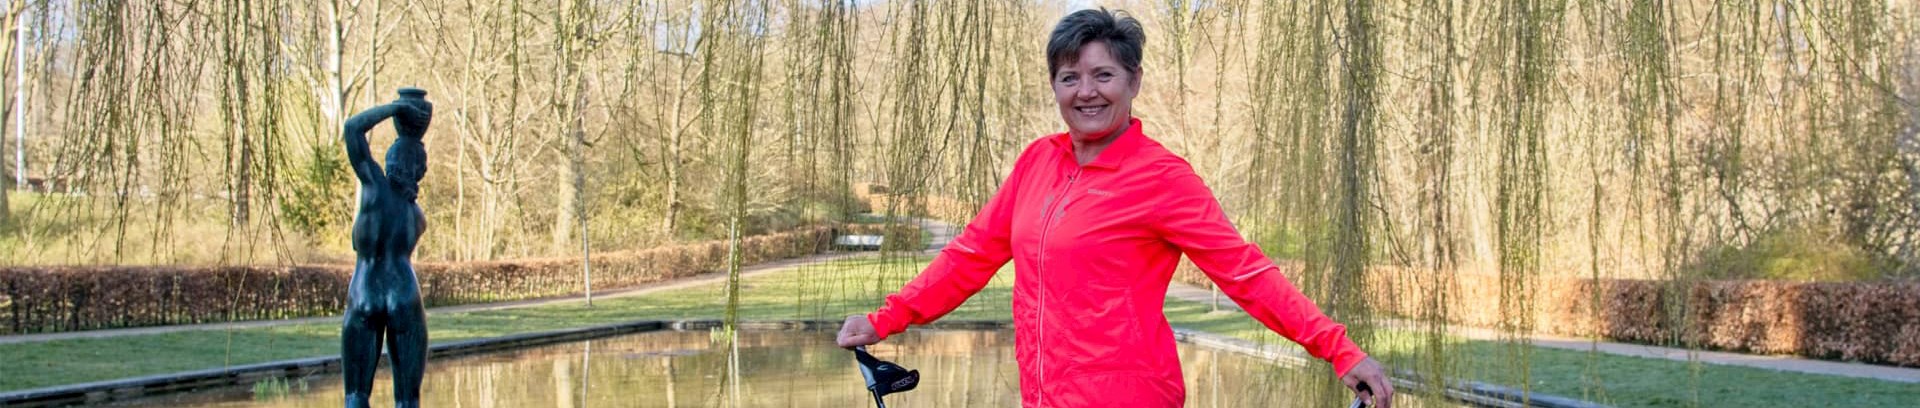 Kathe Rasmussen, underviser på motionshold for fold med skade efter skade på hjernen - FOF Aarhus